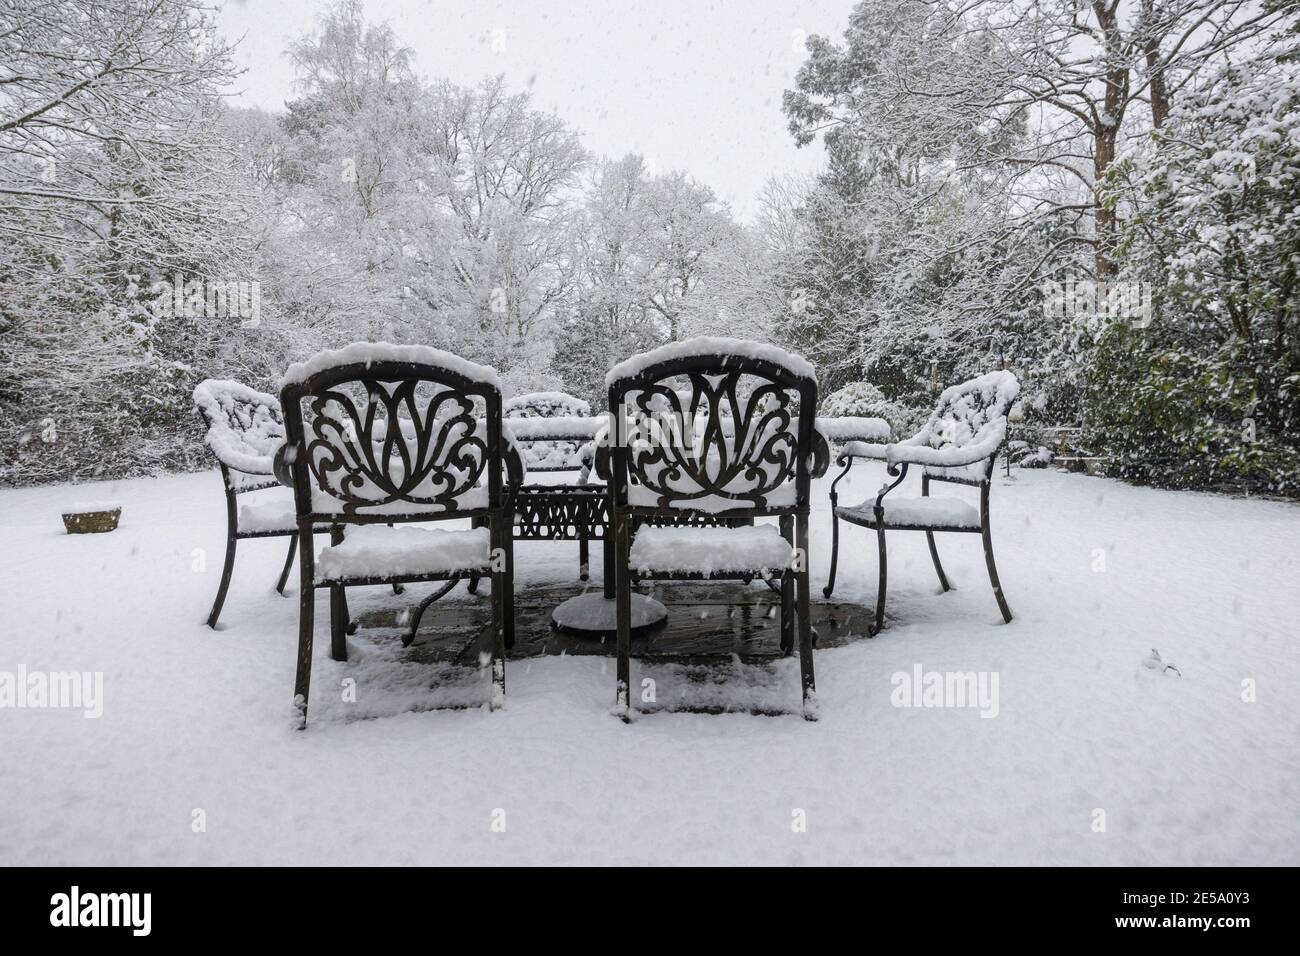 Tables et chaises extérieures sur un patio et arbres couverts de neige lors d'une forte chute de neige dans un jardin de banlieue Woking, Surrey, au sud-est de l'Angleterre Banque D'Images